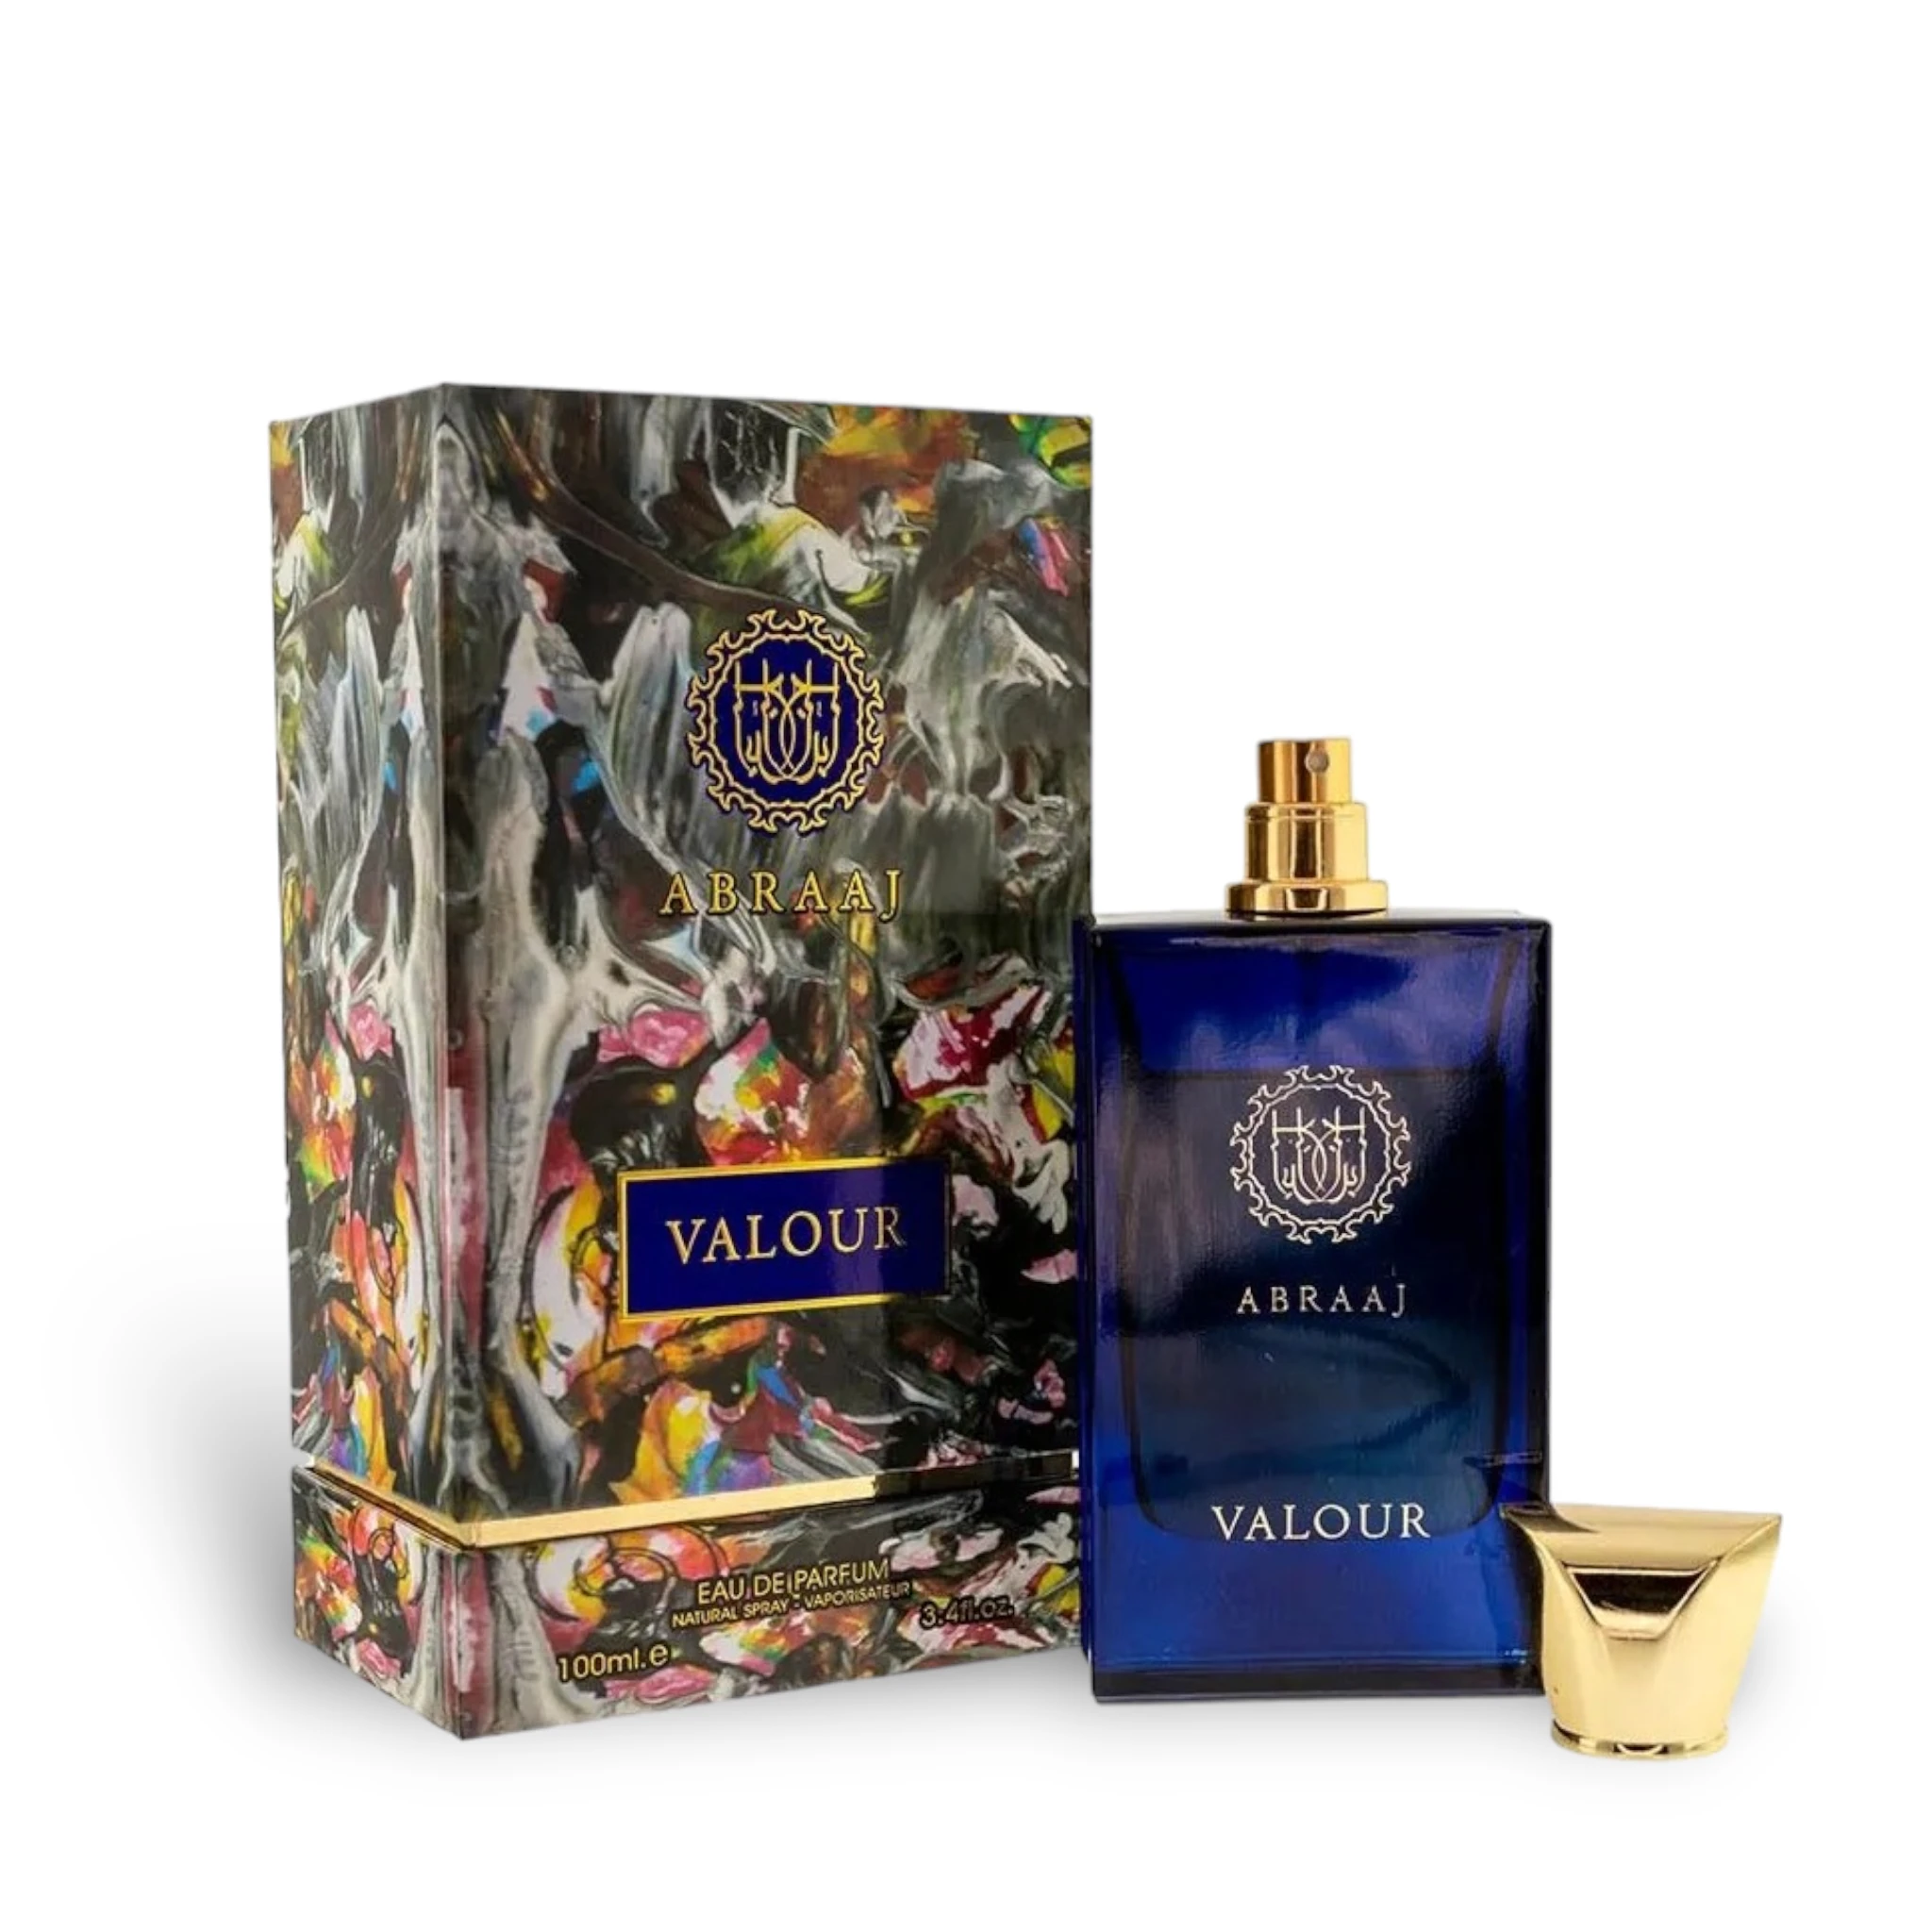 Abraaj Valour Perfume / Eau De Parfum 100Ml By Fa Paris (Fragrance World)